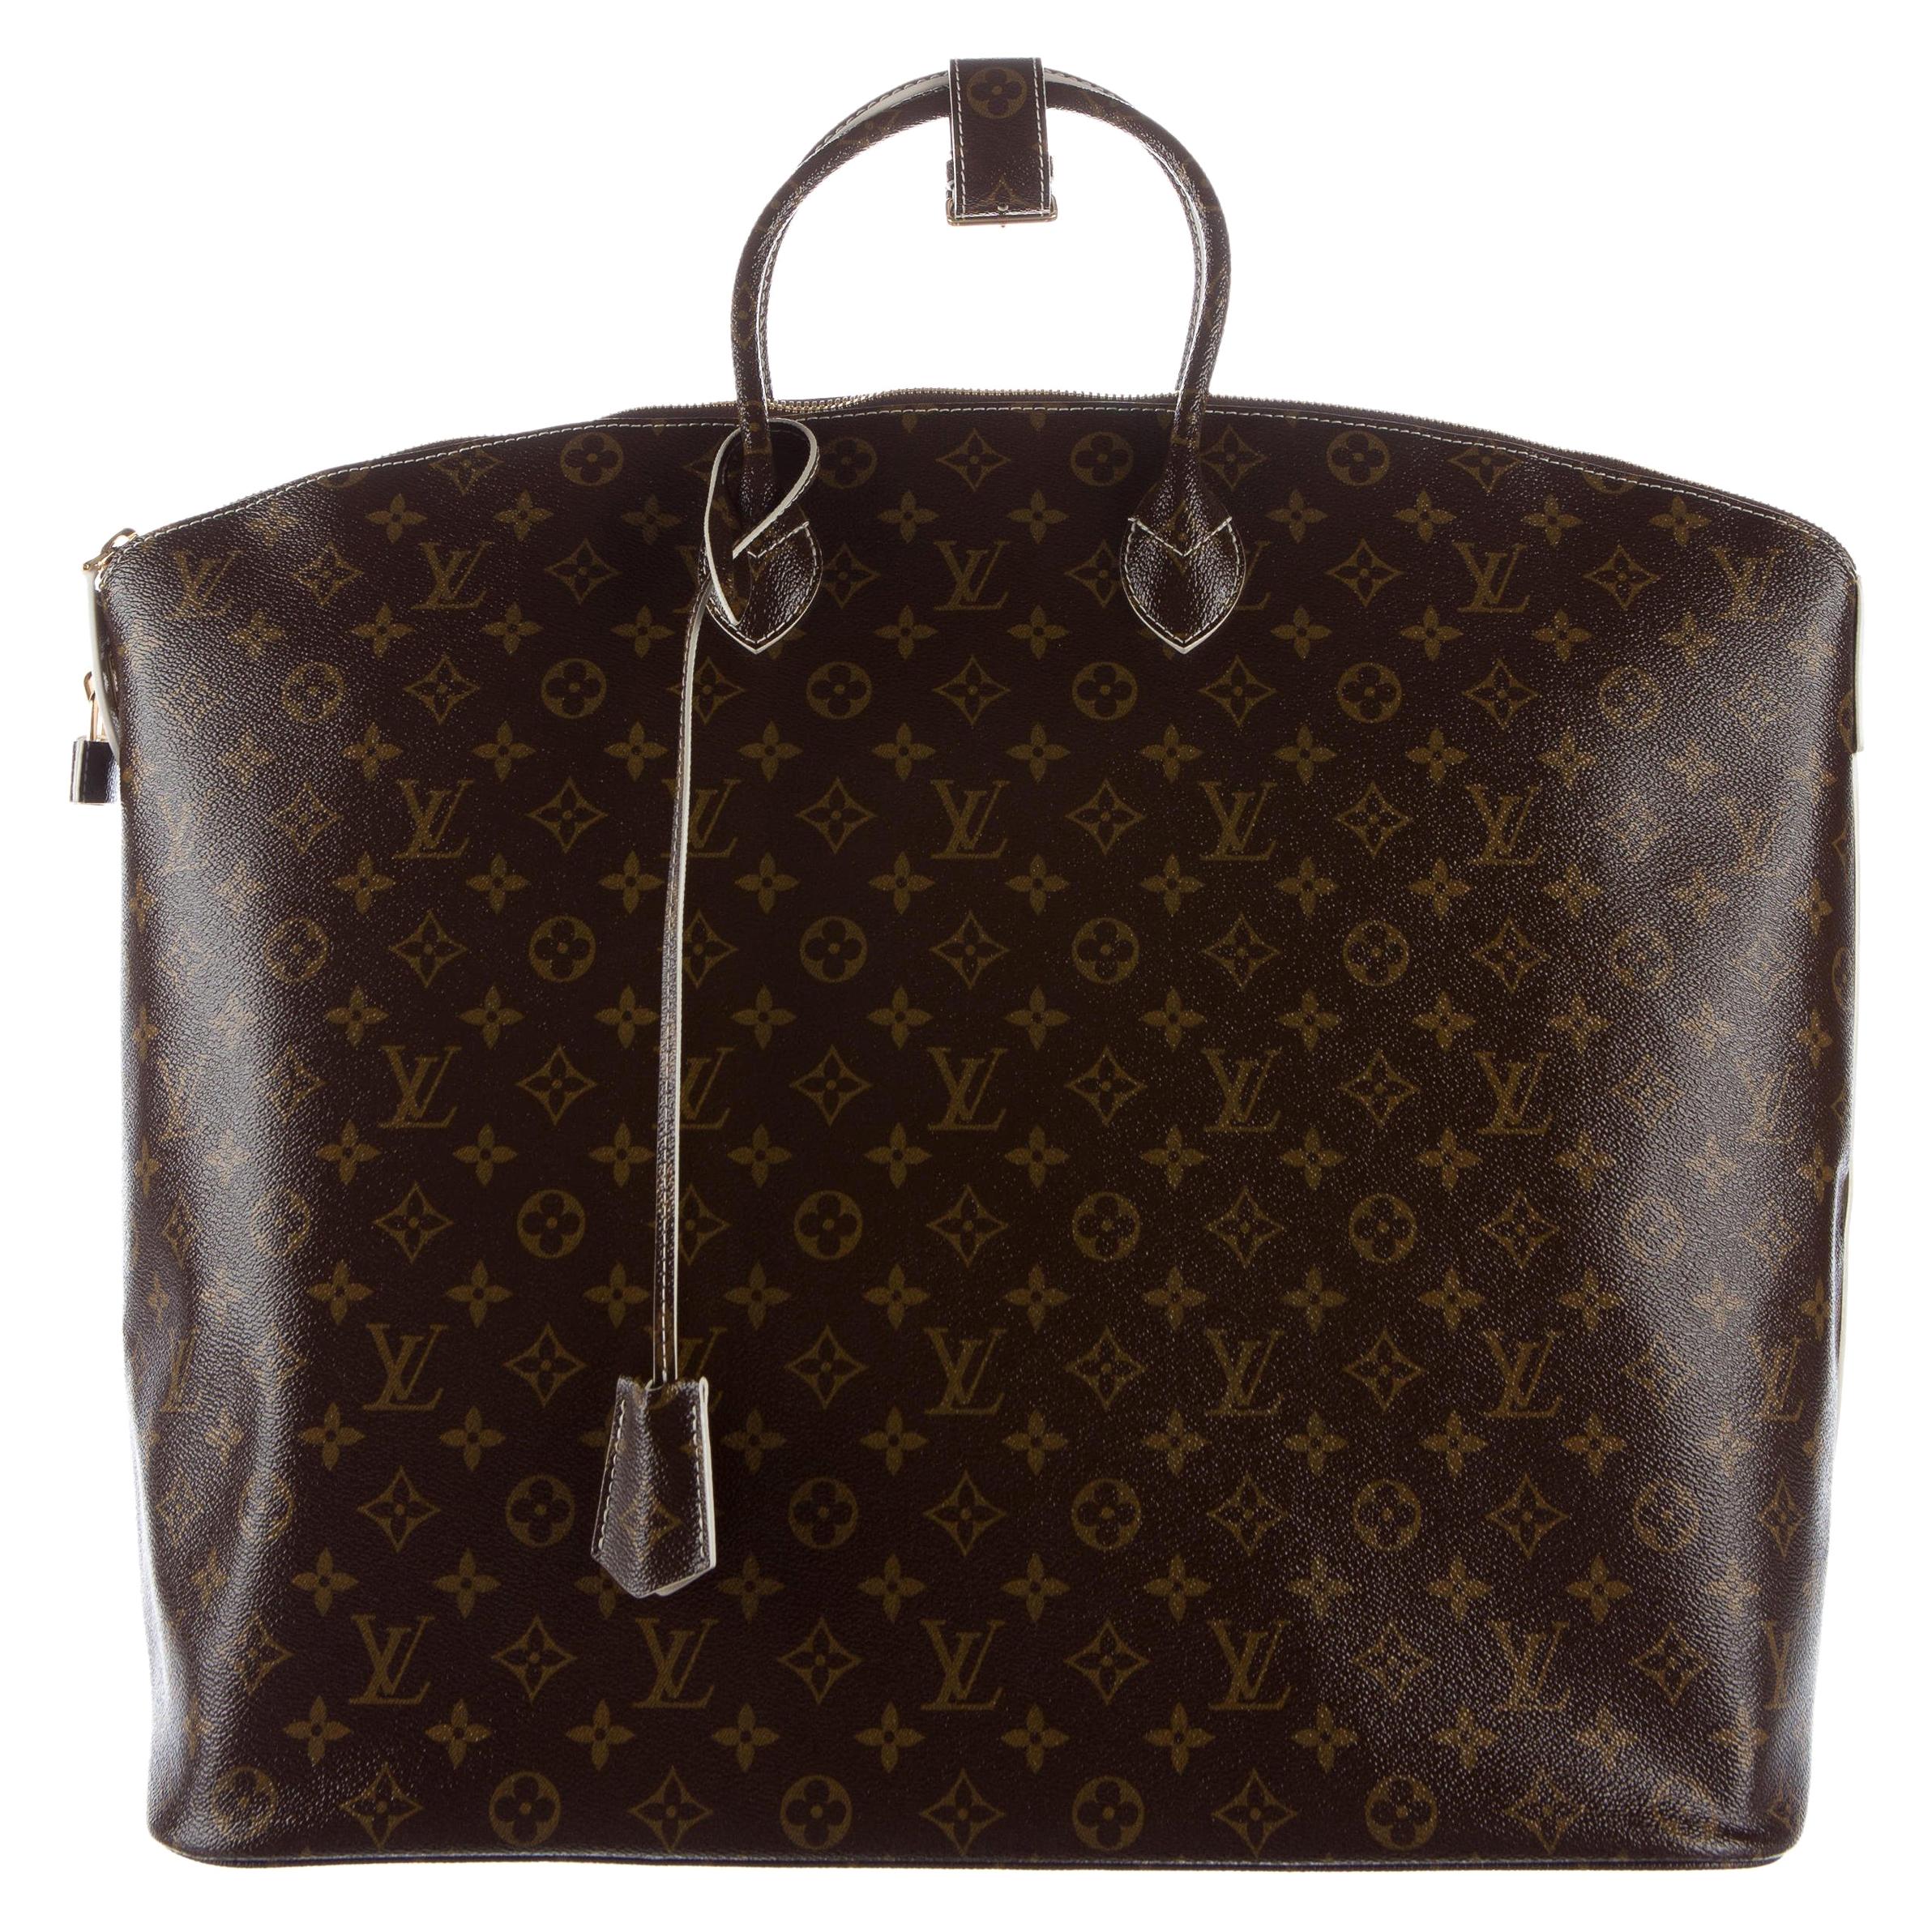 Louis Vuitton Monogram Men's Women's Carryall Duffle Top Handle Travel Tote Bag